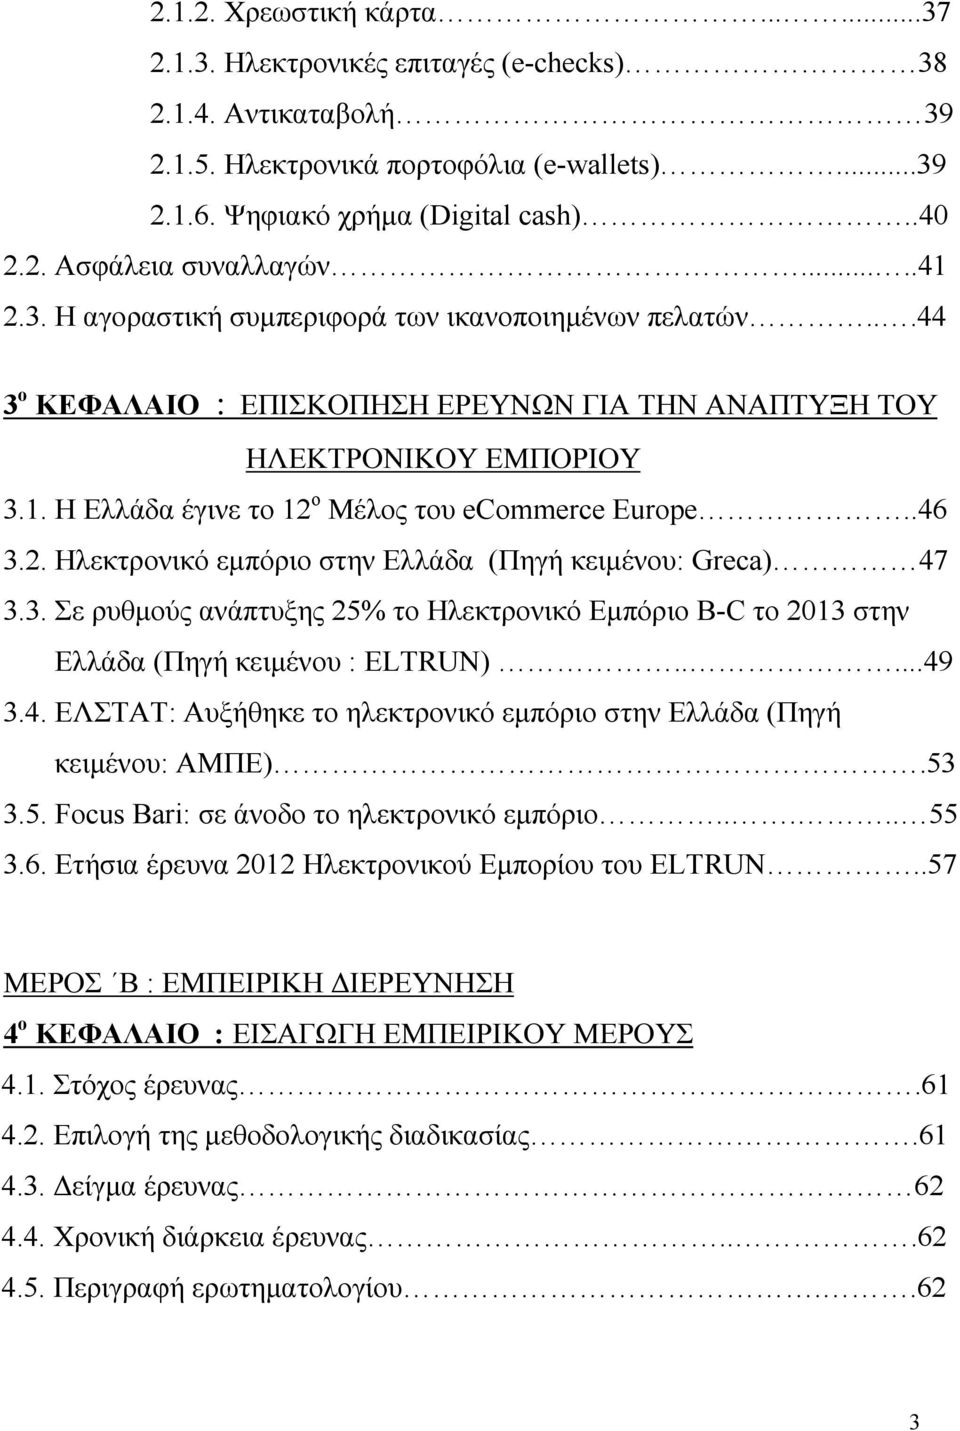 .46 3.2. Ηλεκτρονικό εμπόριο στην Ελλάδα (Πηγή κειμένου: Greca) 47 3.3. Σε ρυθμούς ανάπτυξης 25% το Ηλεκτρονικό Εμπόριο B-C το 2013 στην Ελλάδα (Πηγή κειμένου : ELTRUN).....49 3.4. ΕΛΣΤΑΤ: Αυξήθηκε το ηλεκτρονικό εμπόριο στην Ελλάδα (Πηγή κειμένου: ΑΜΠΕ).